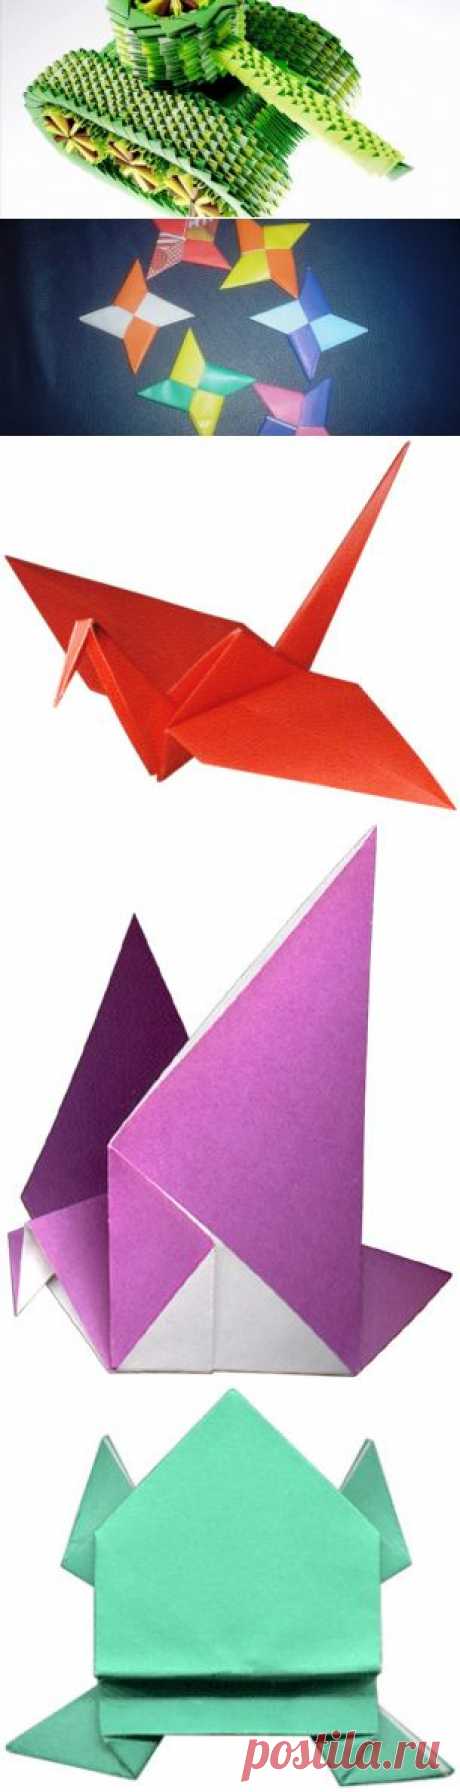 Схемы оригами | Оригами: поделки из бумаги своими руками